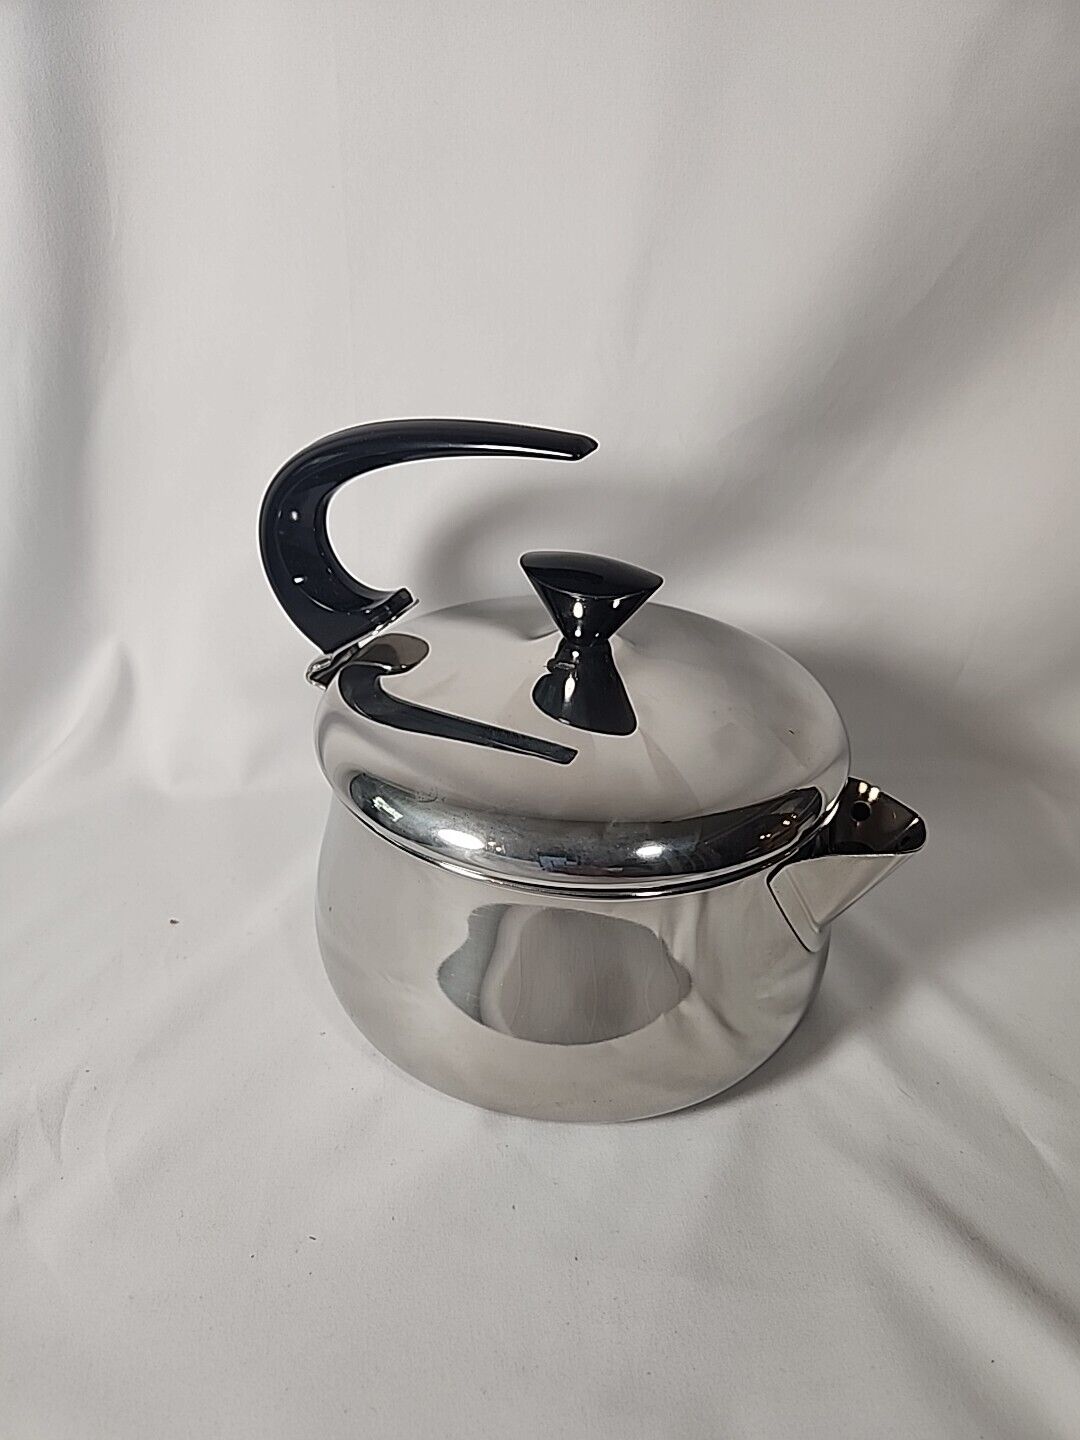 Farberware Tea Kettle Model 762 Stainless Steel Swoop Handled MCM Vintage NIB